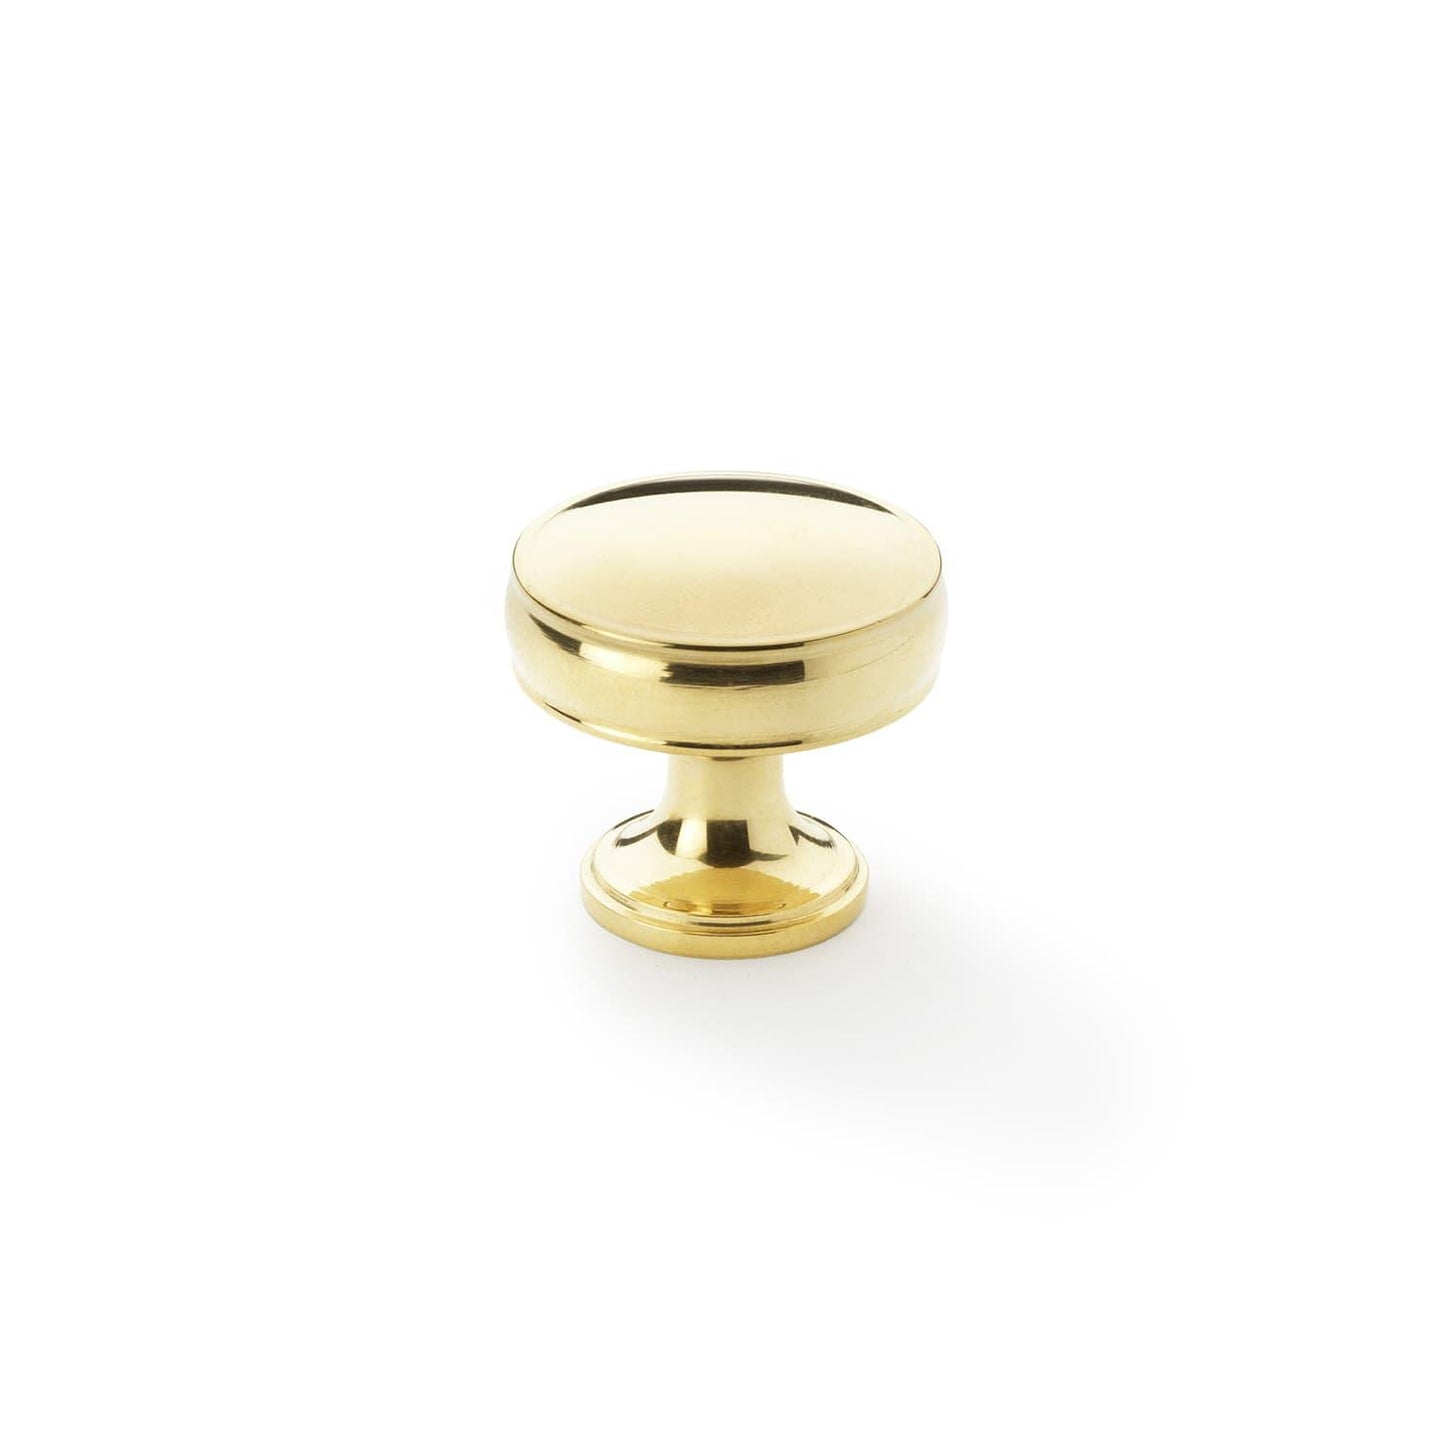 Solid Brass Cupboard Knob - Bilden Home & Hardware Market